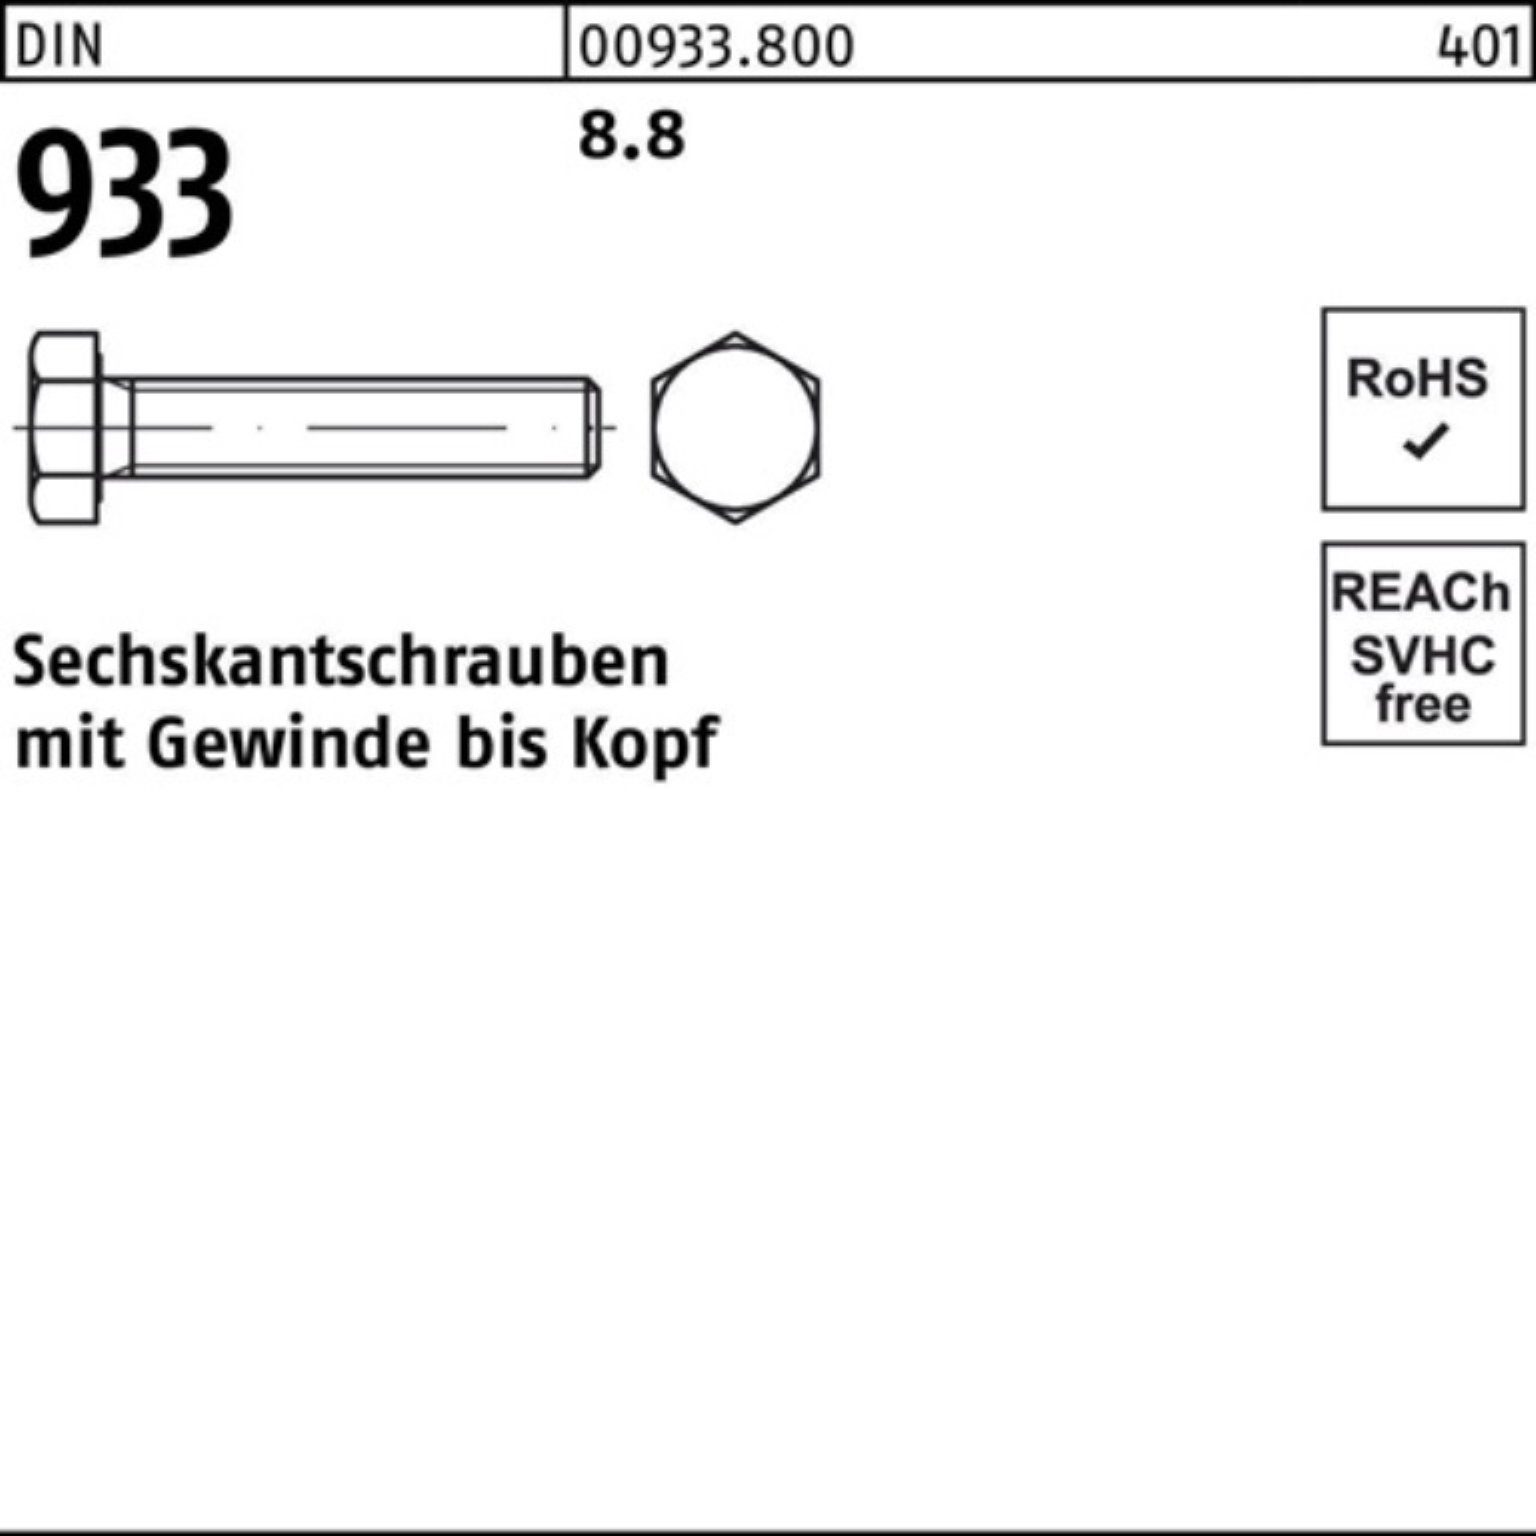 Reyher Sechskantschraube DIN Stück 933 100er 933 Sechskantschraube VG 100 Pack DIN 180 M8x 8.8